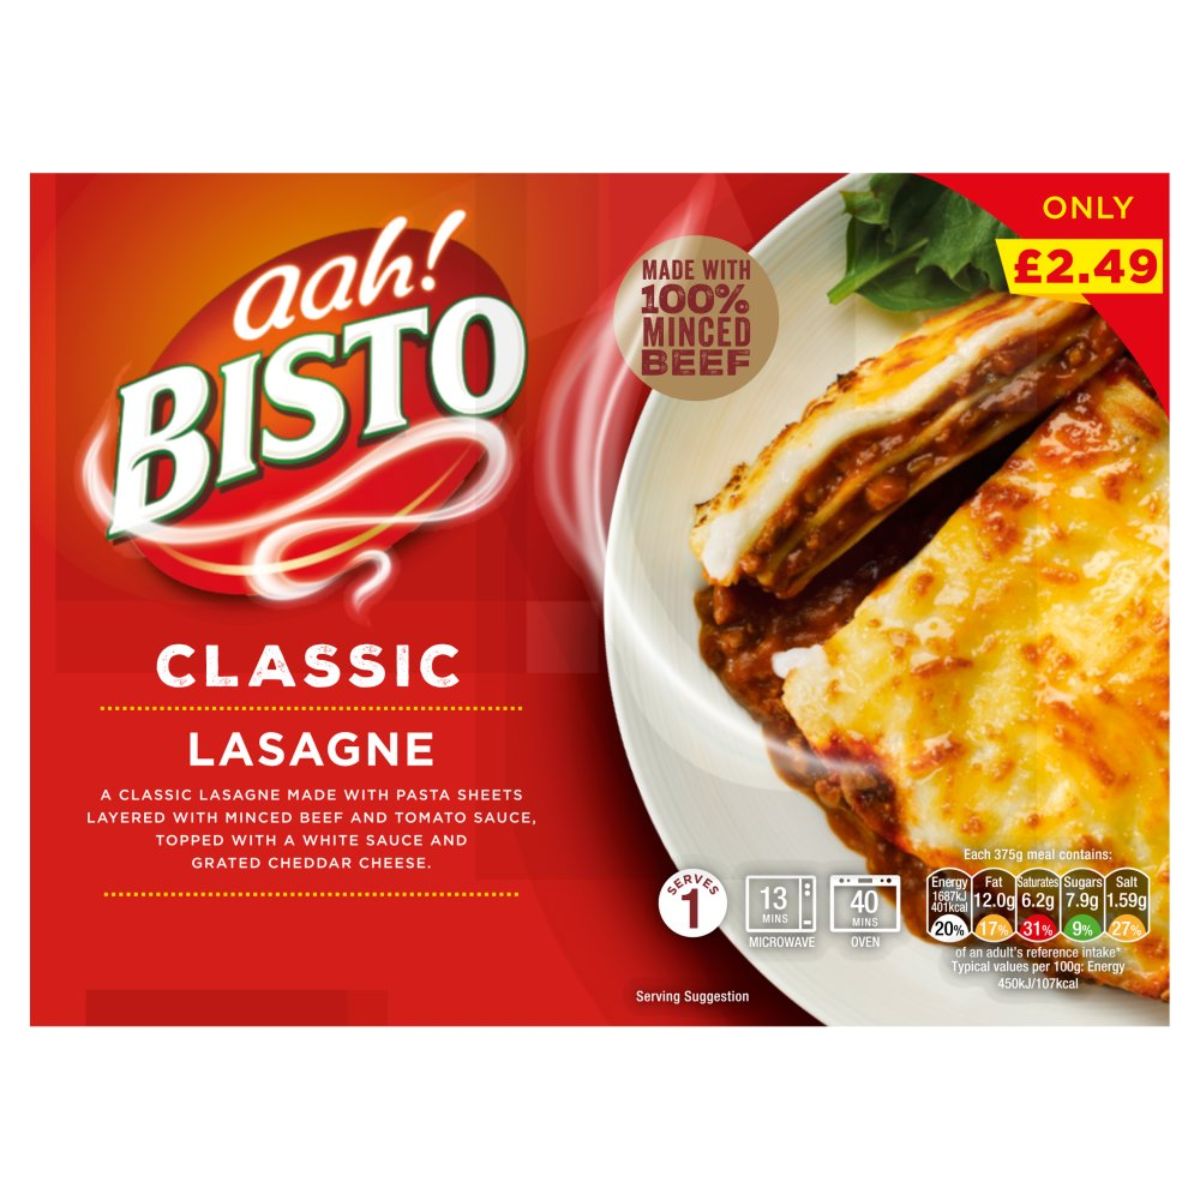 A box of Bisto - Classic Lasagne - 375g.